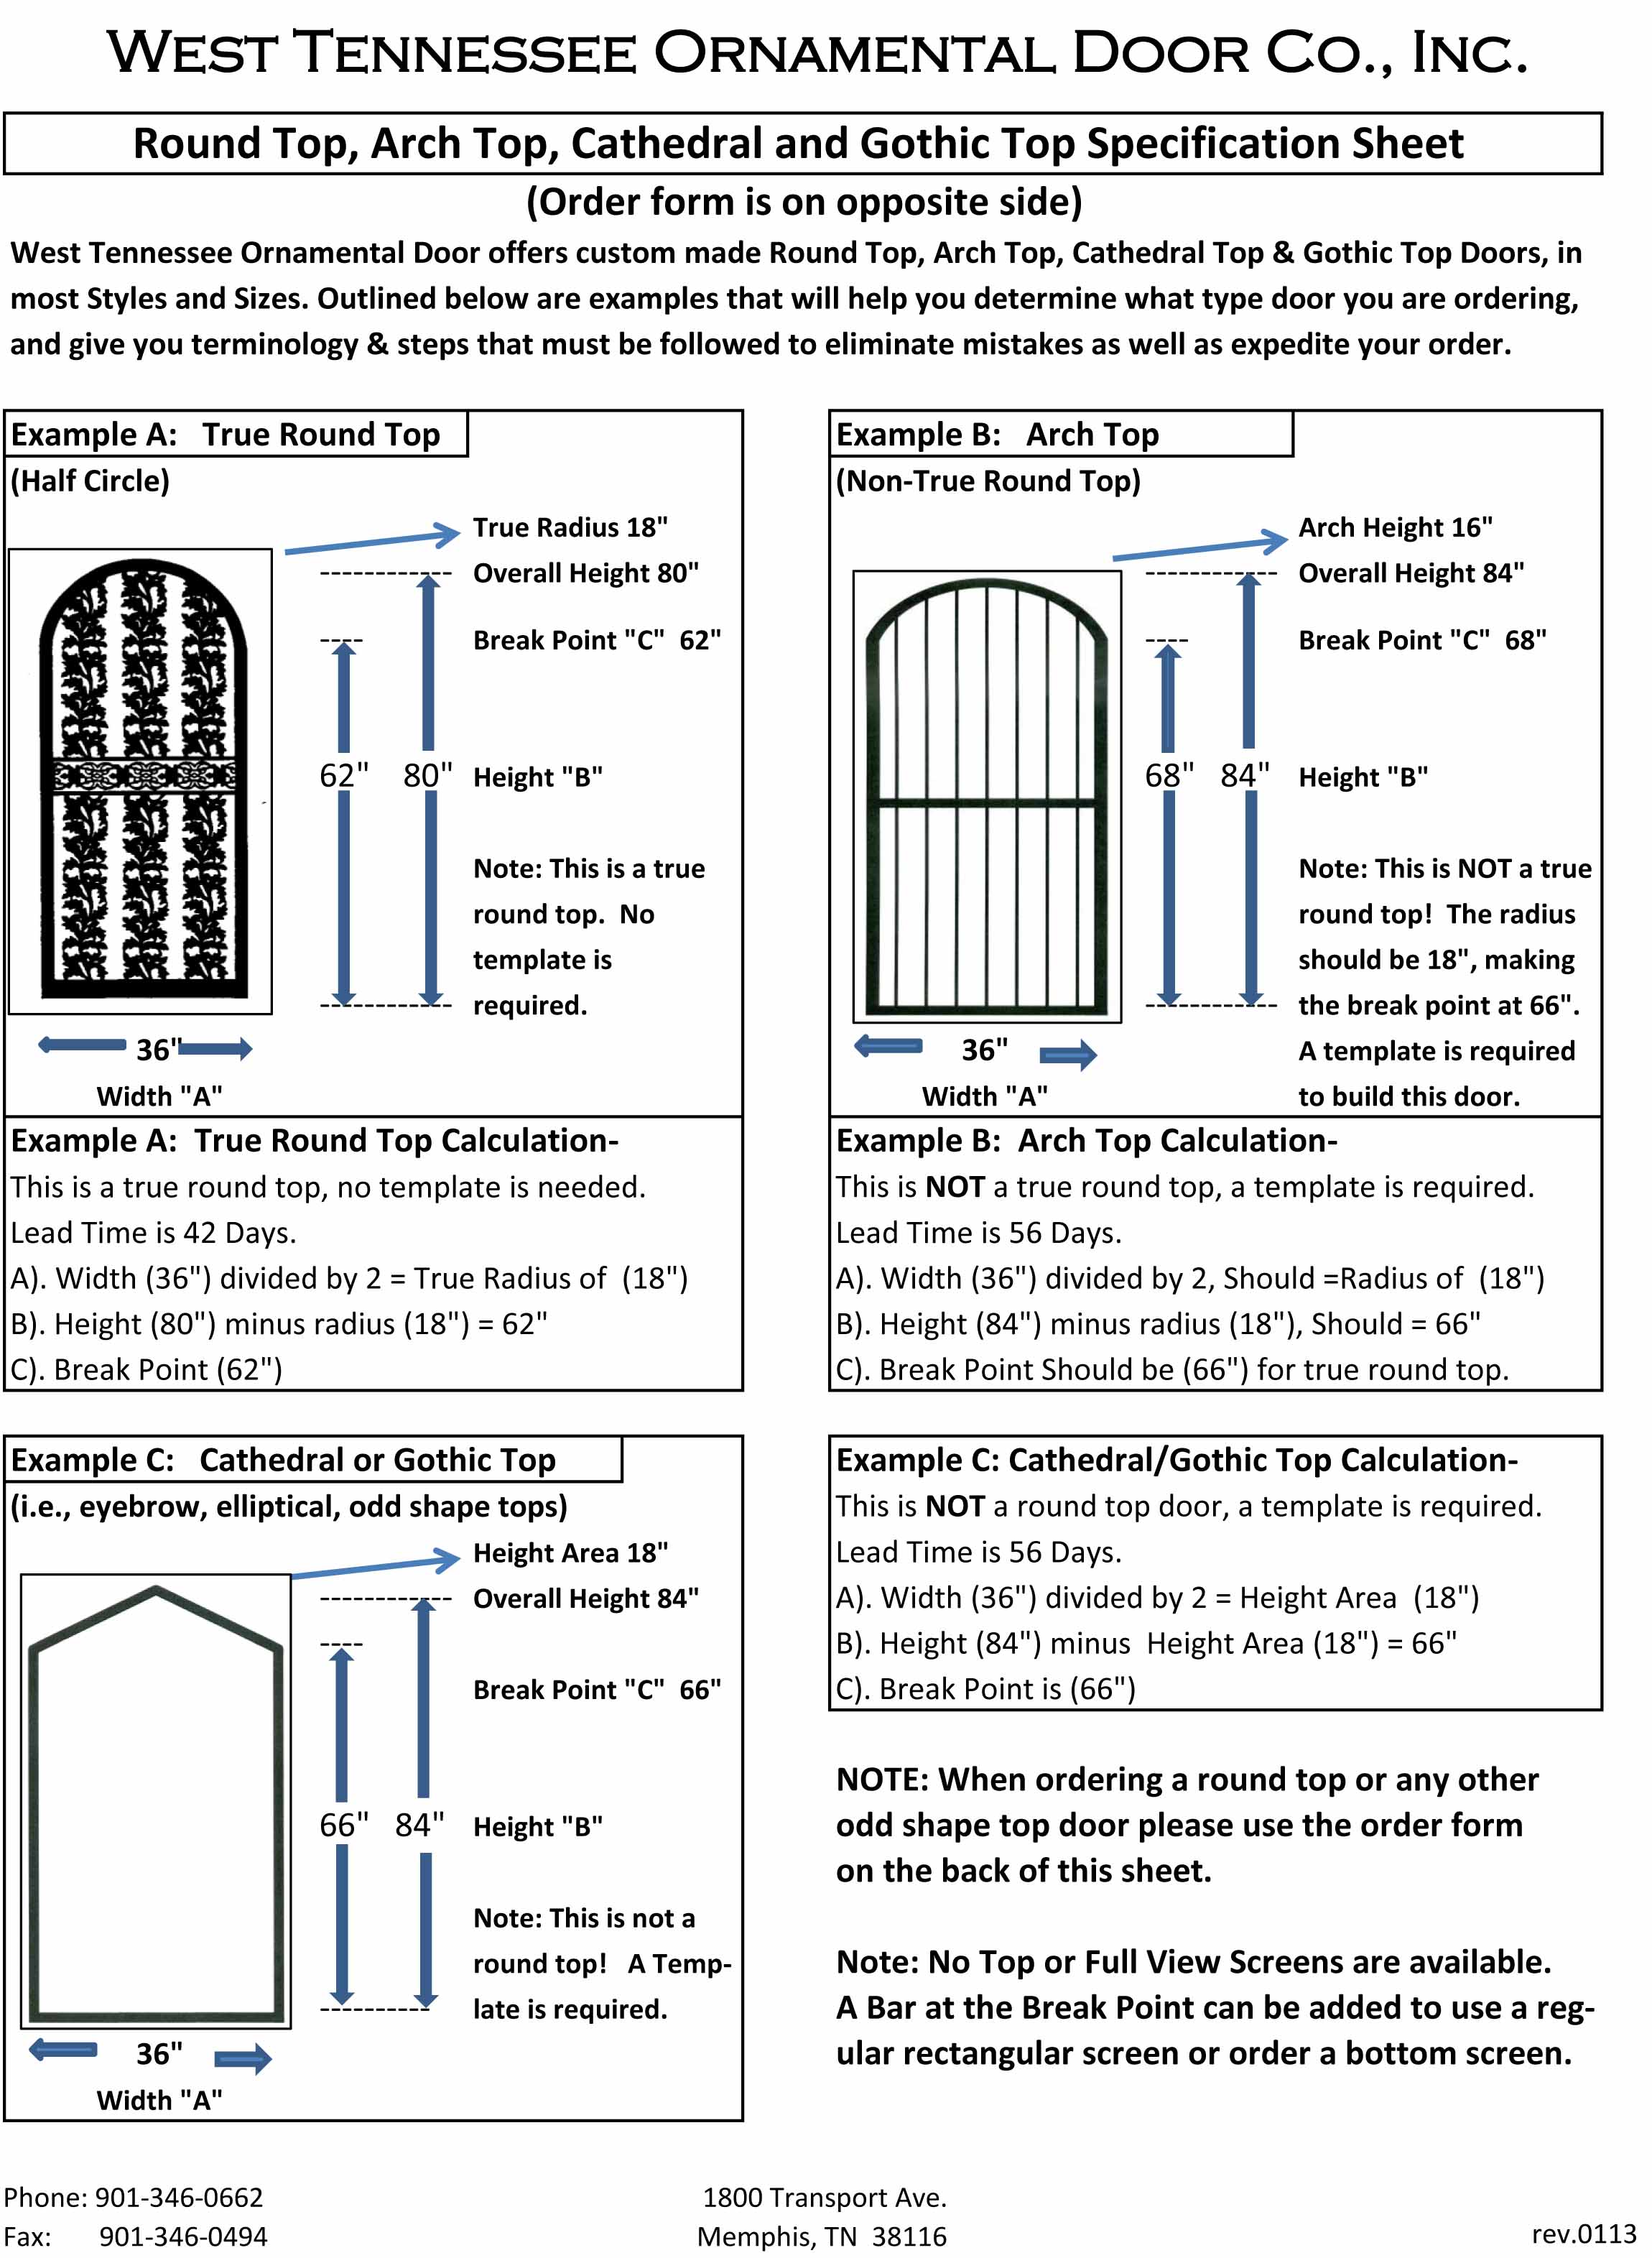 How to Measure a Round Top Security Door